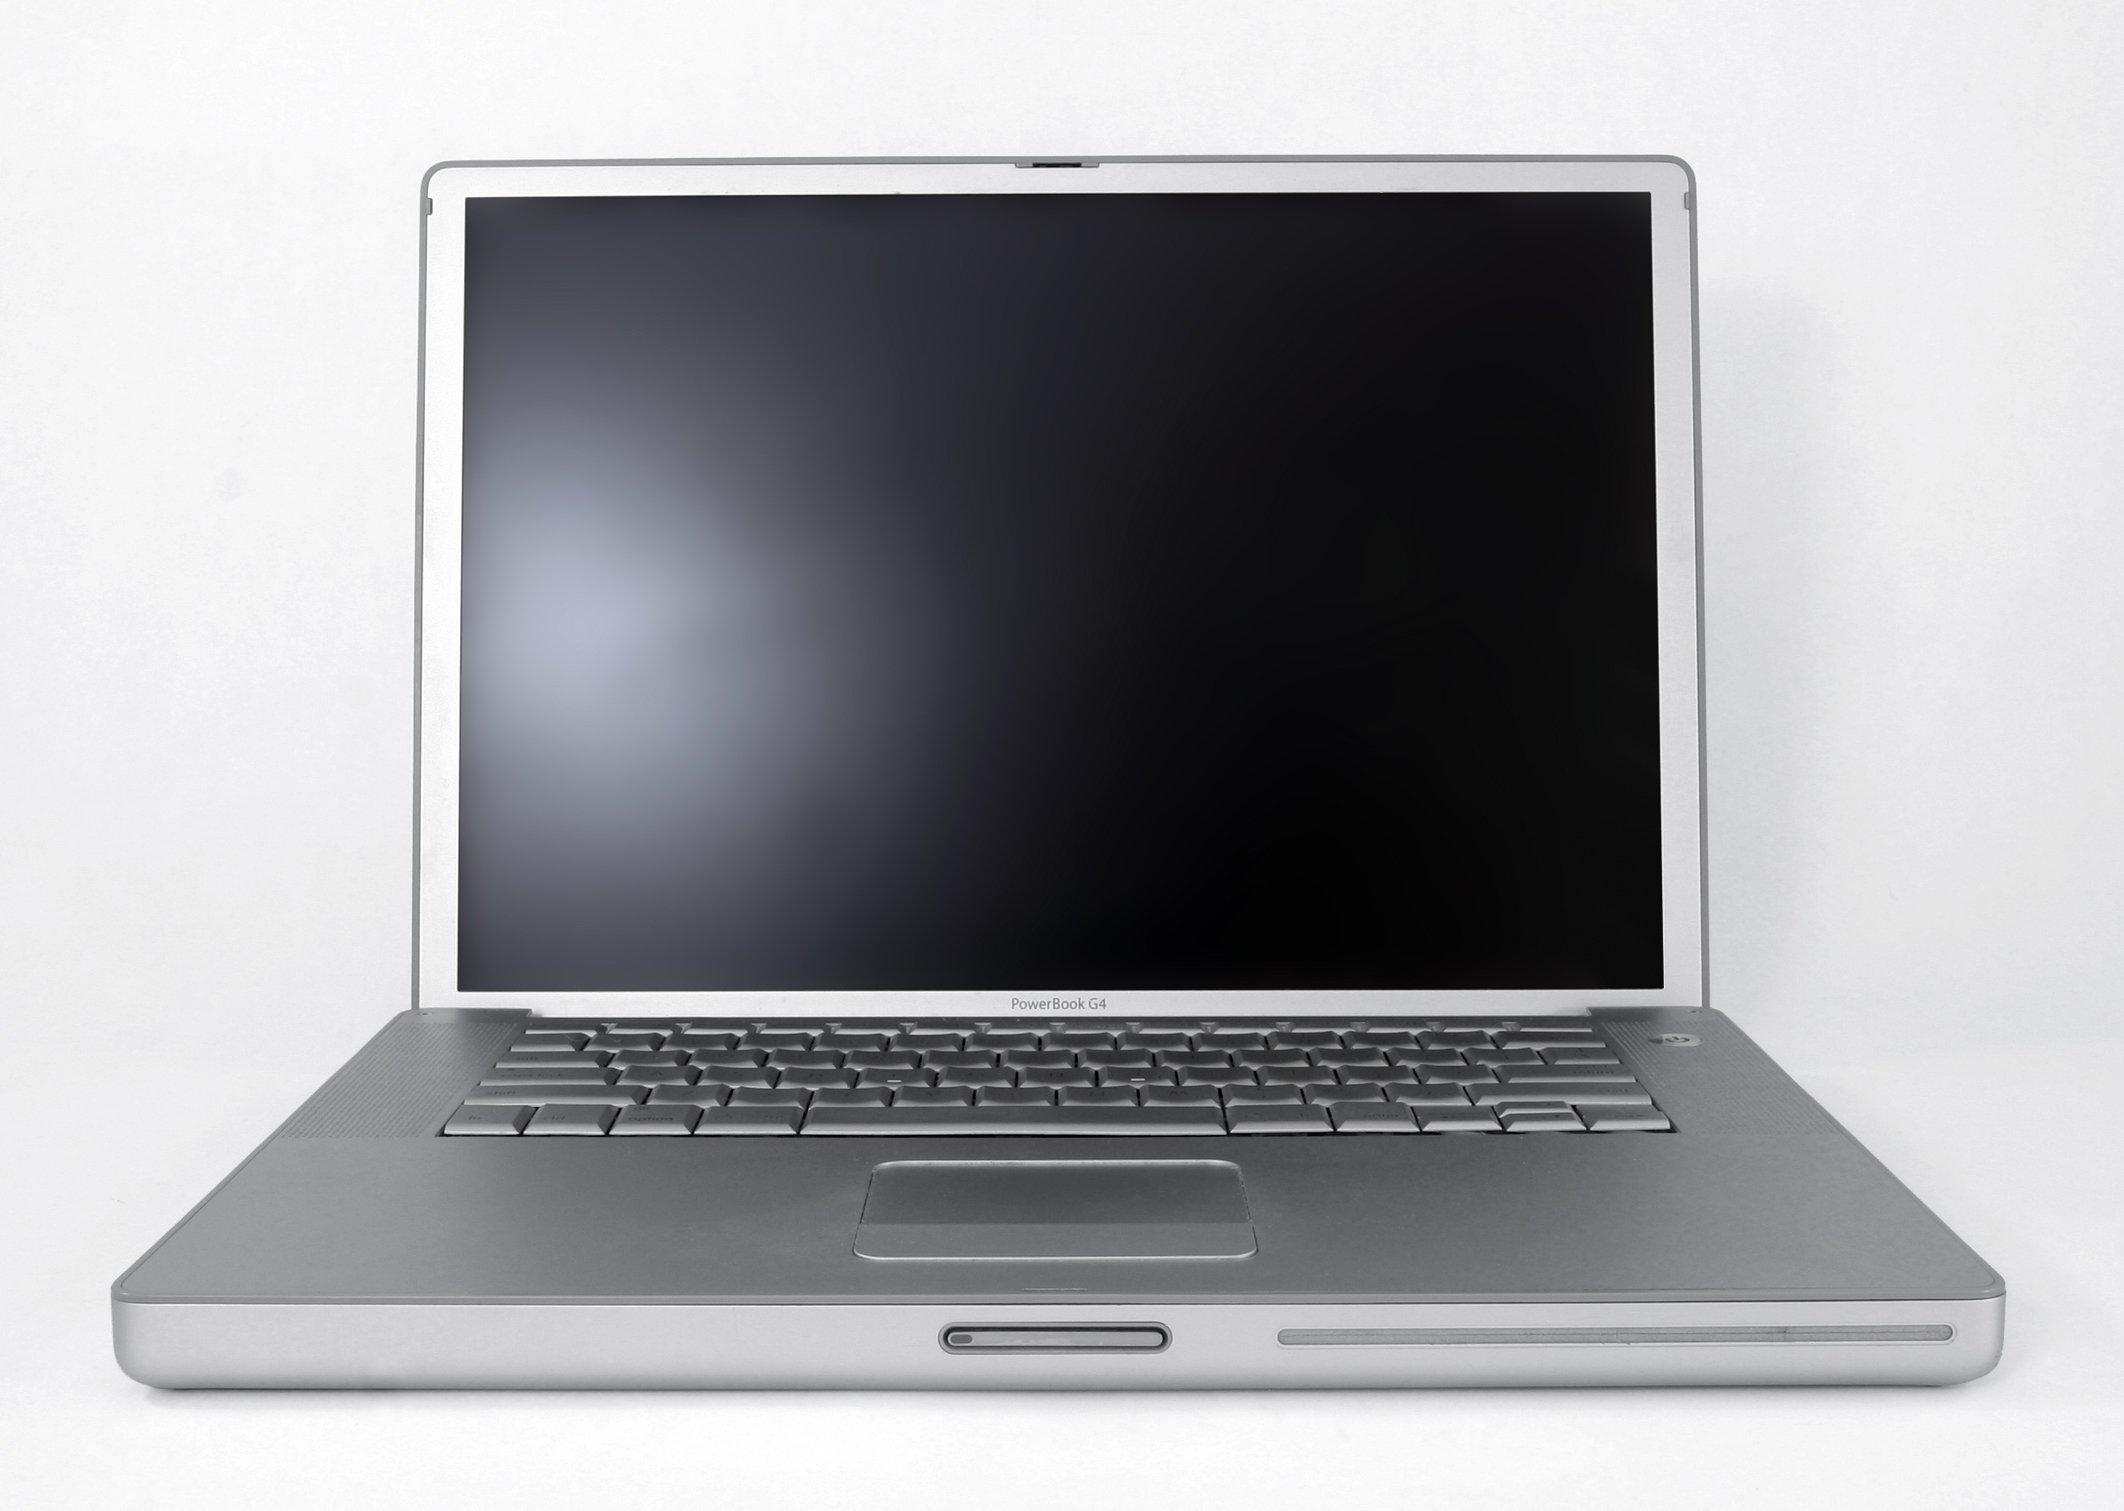 Chiếc PowerBook G4 là một trong những laptop đời đầu của Apple. (Nguồn: Internet)